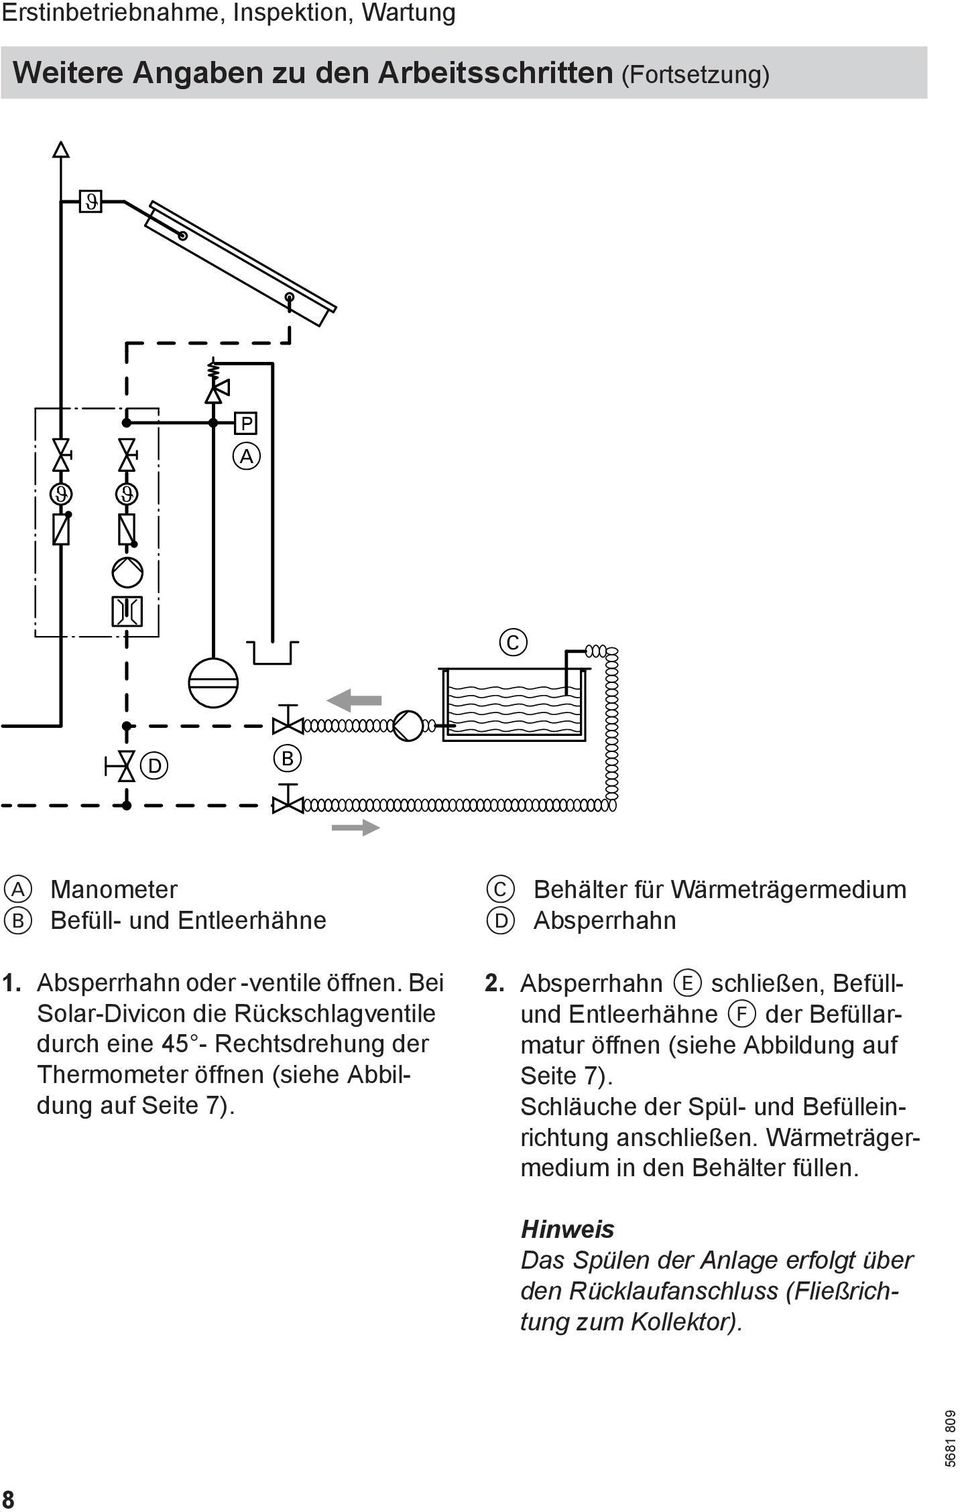 C Behälter für Wärmeträgermedium D Absperrhahn 2. Absperrhahn E schließen, Befüllund Entleerhähne F der Befüllarmatur öffnen (siehe Abbildung auf Seite 7).